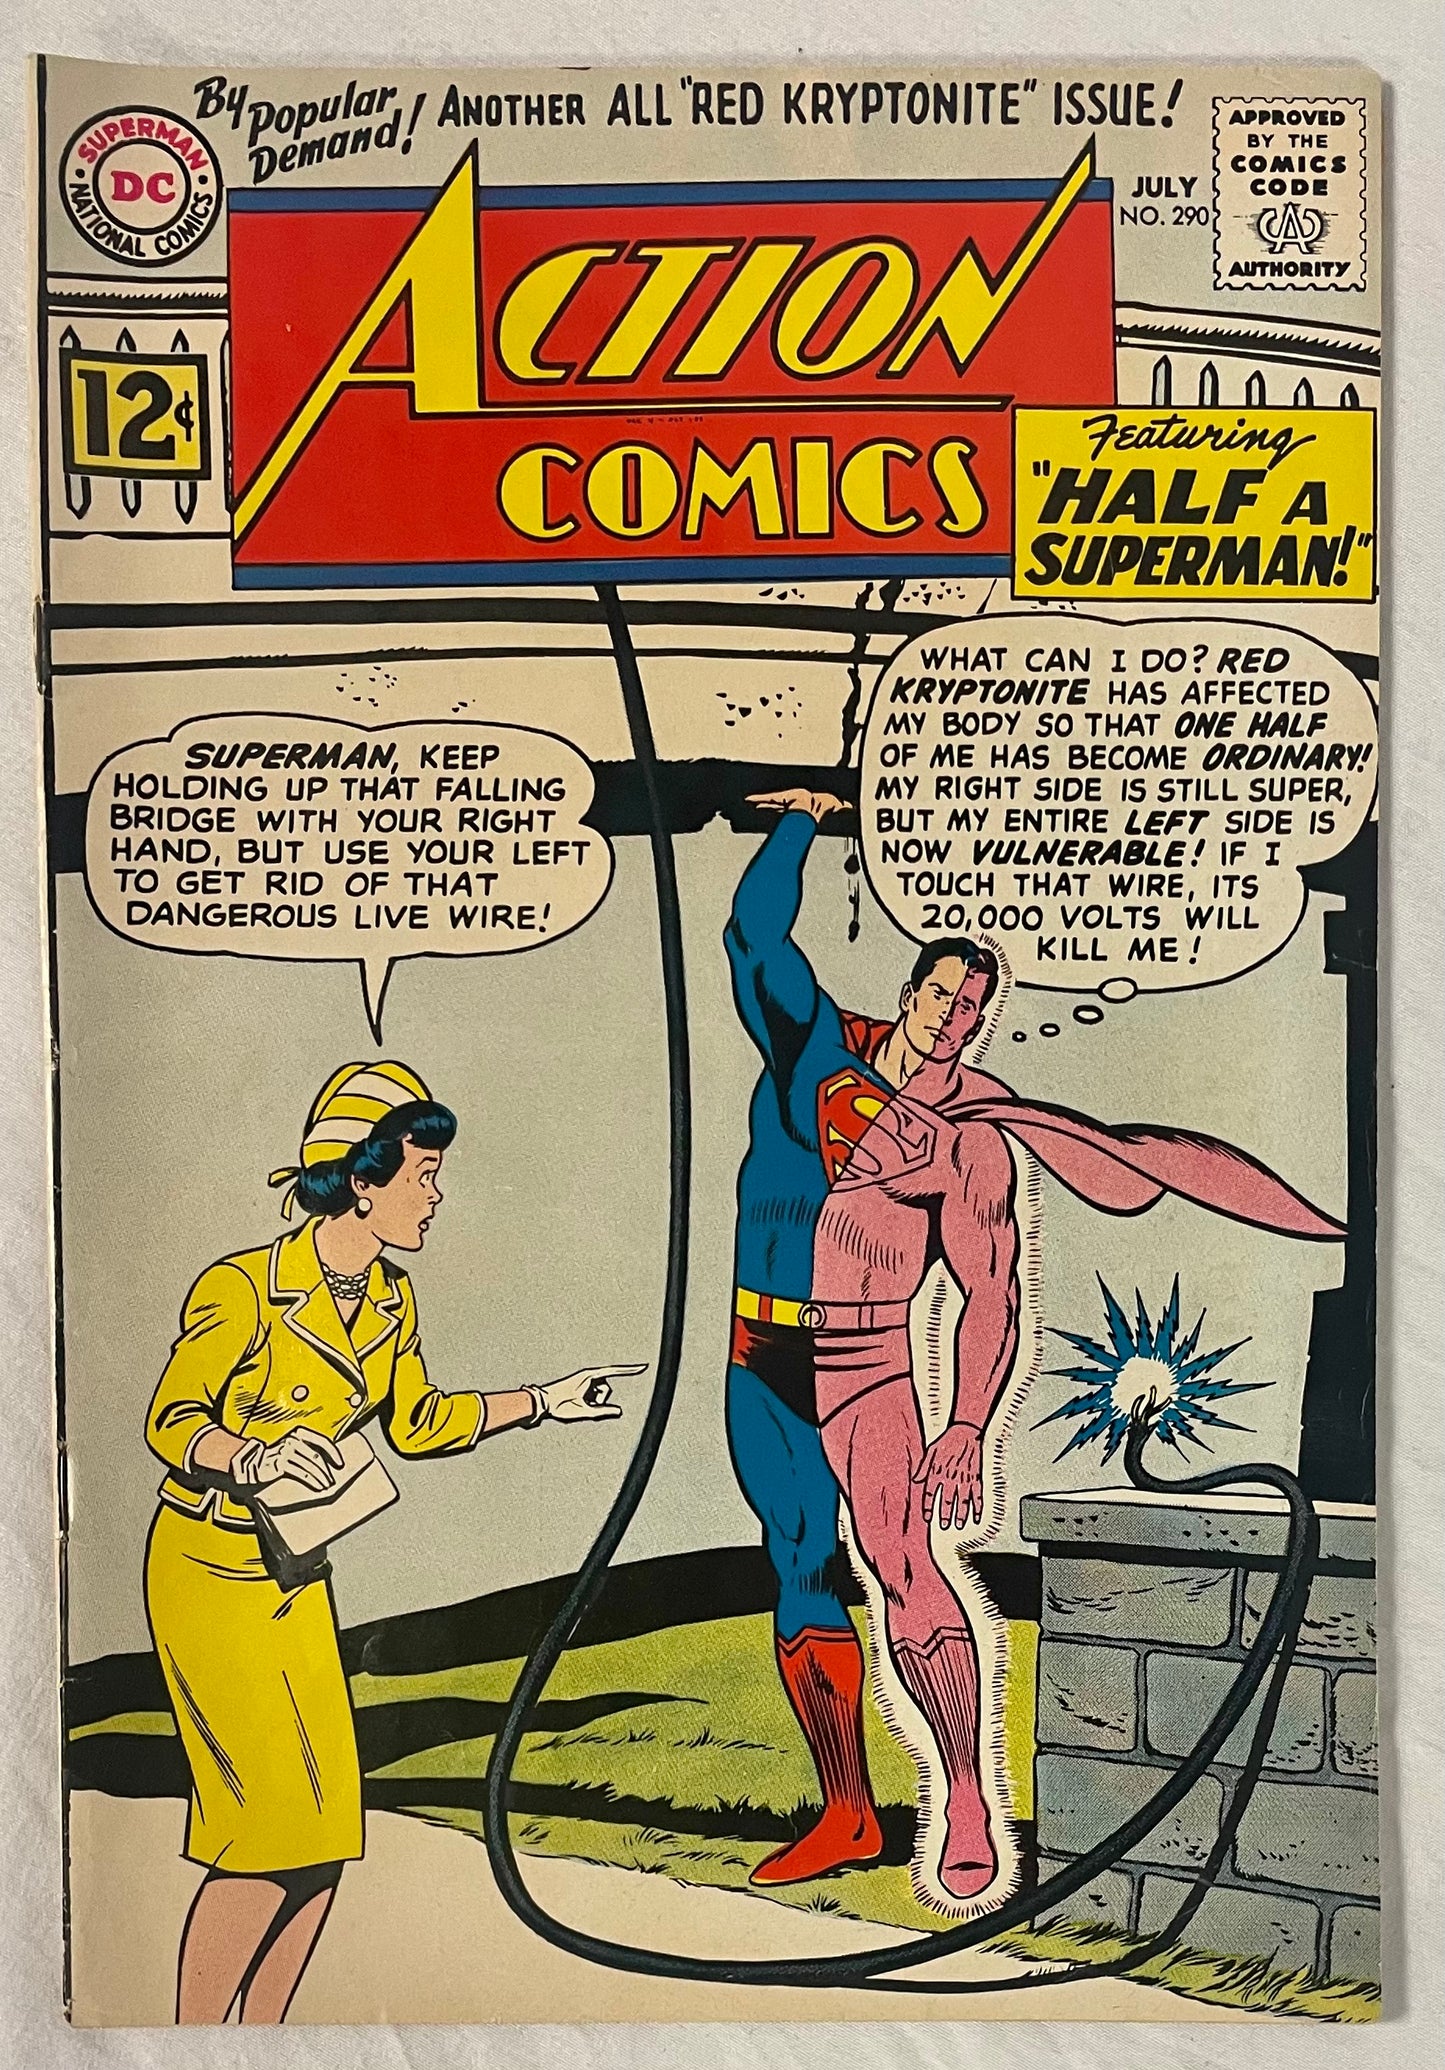 DC Comics Action Comics No. 290